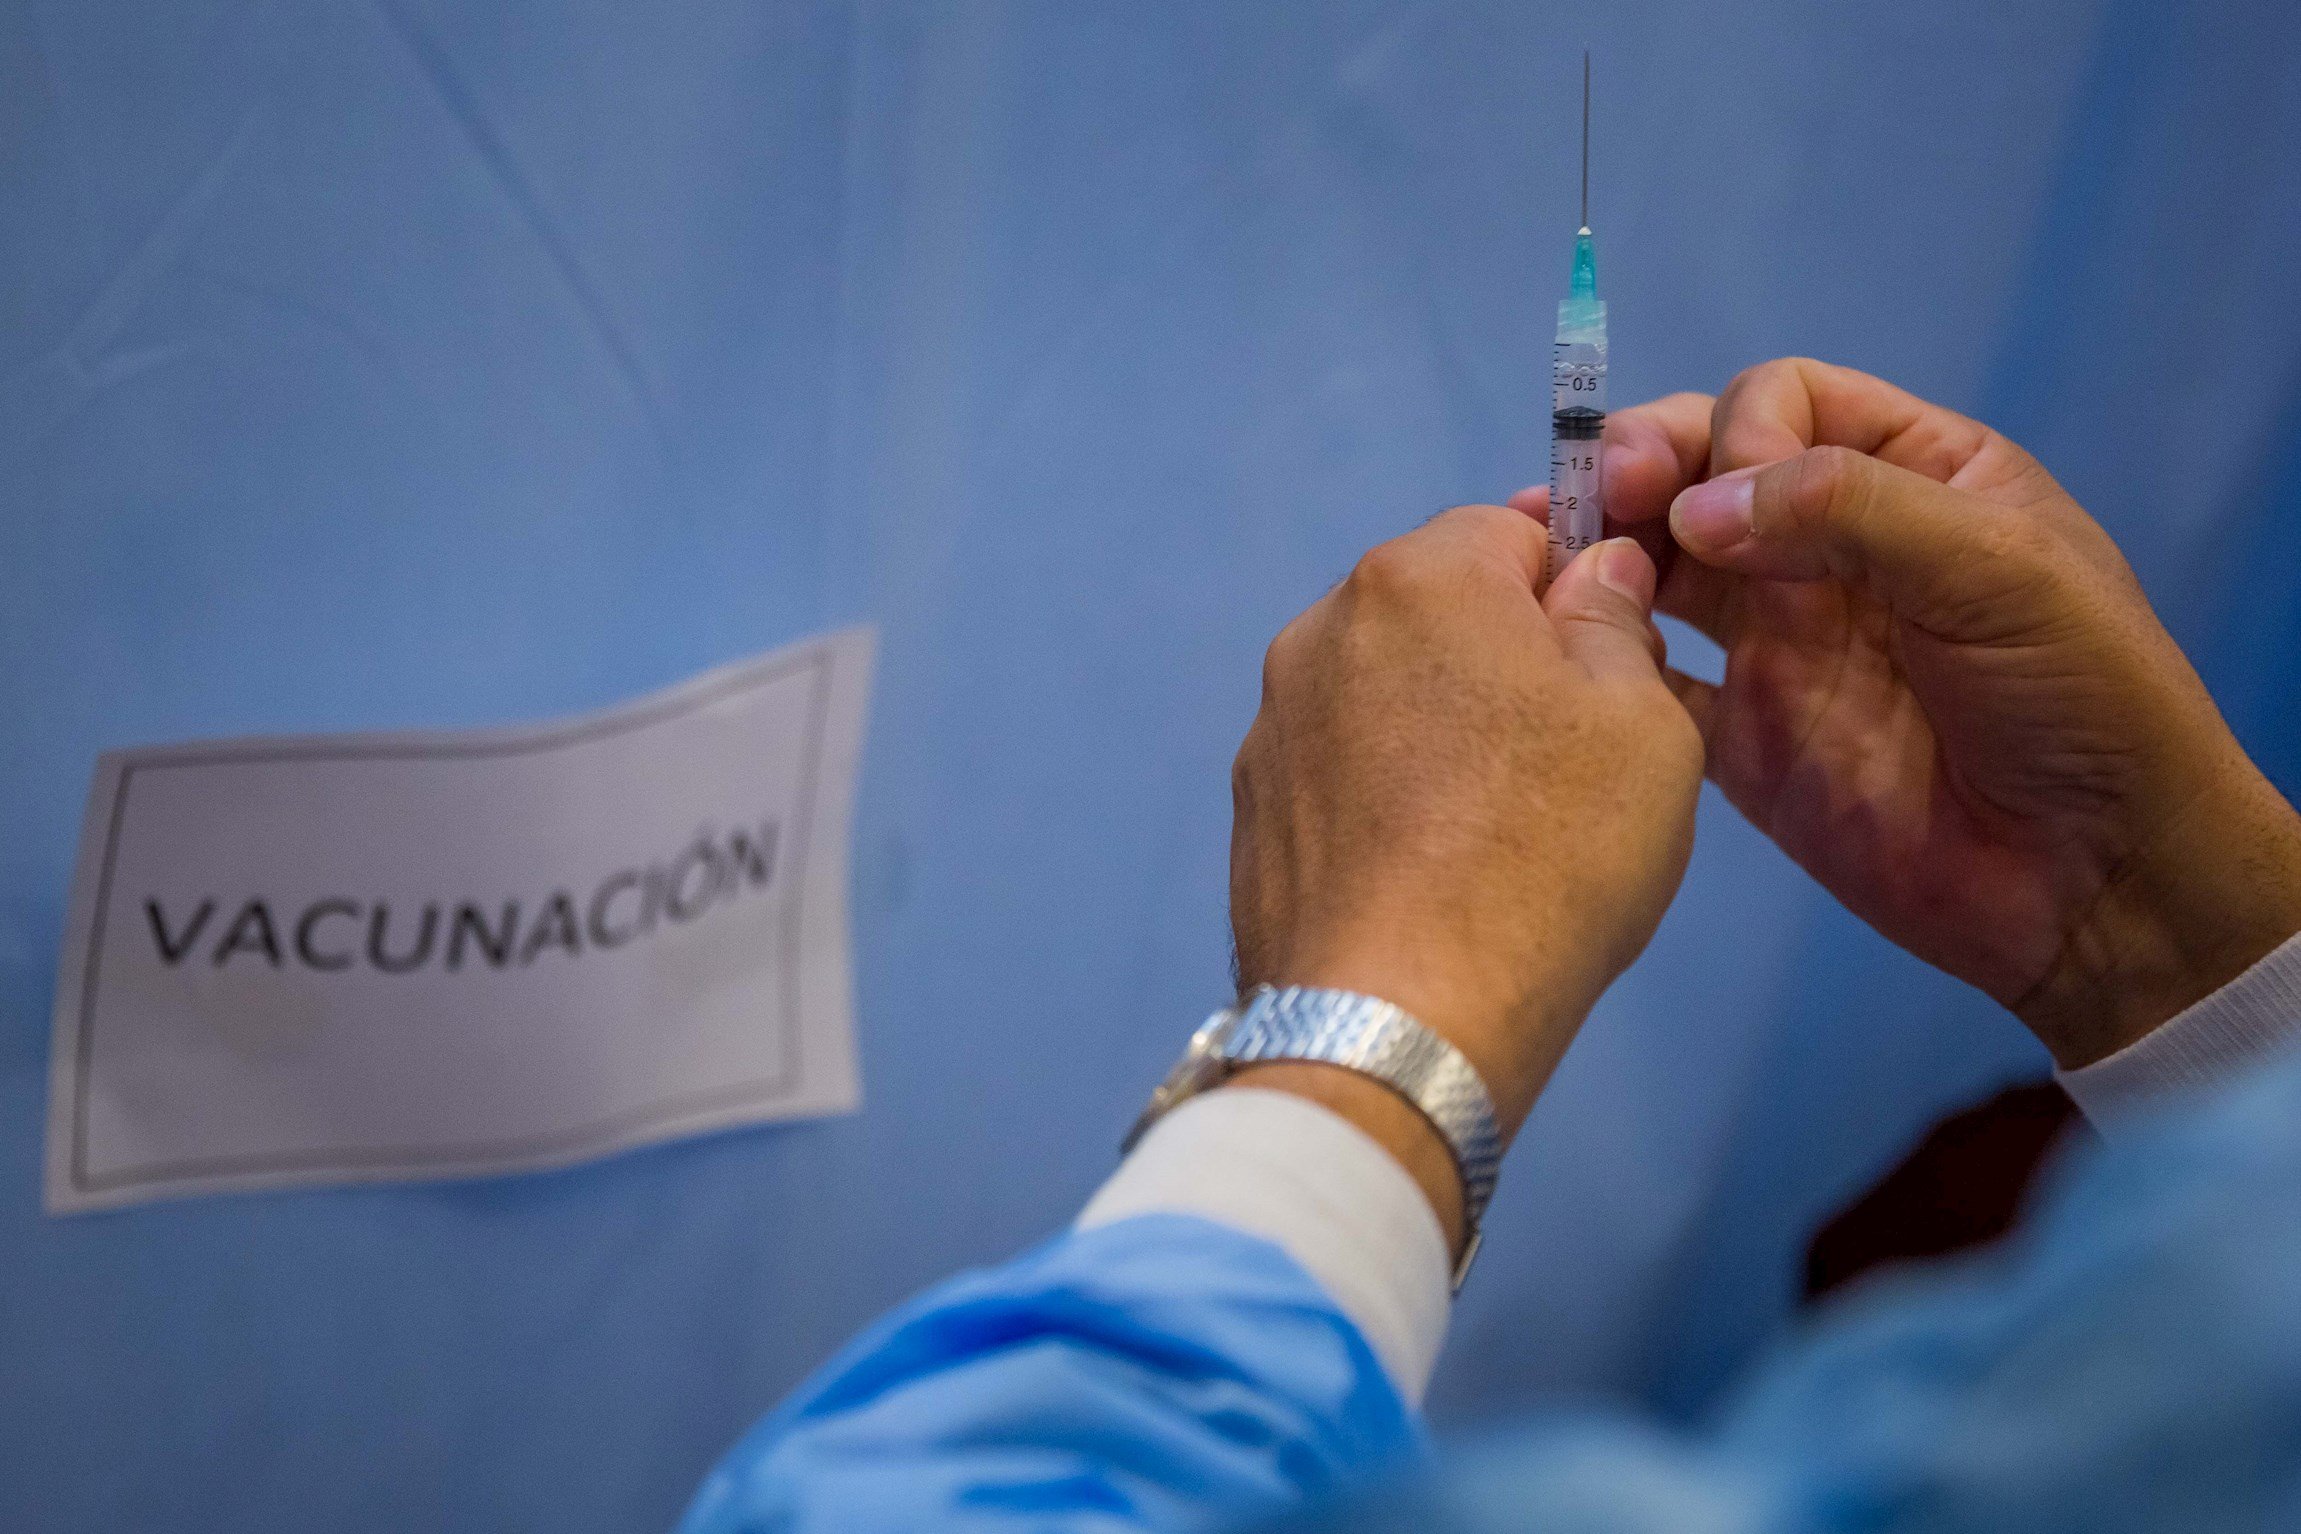 Els països pobres podrien necessitar 57 anys per vacunar tota la població